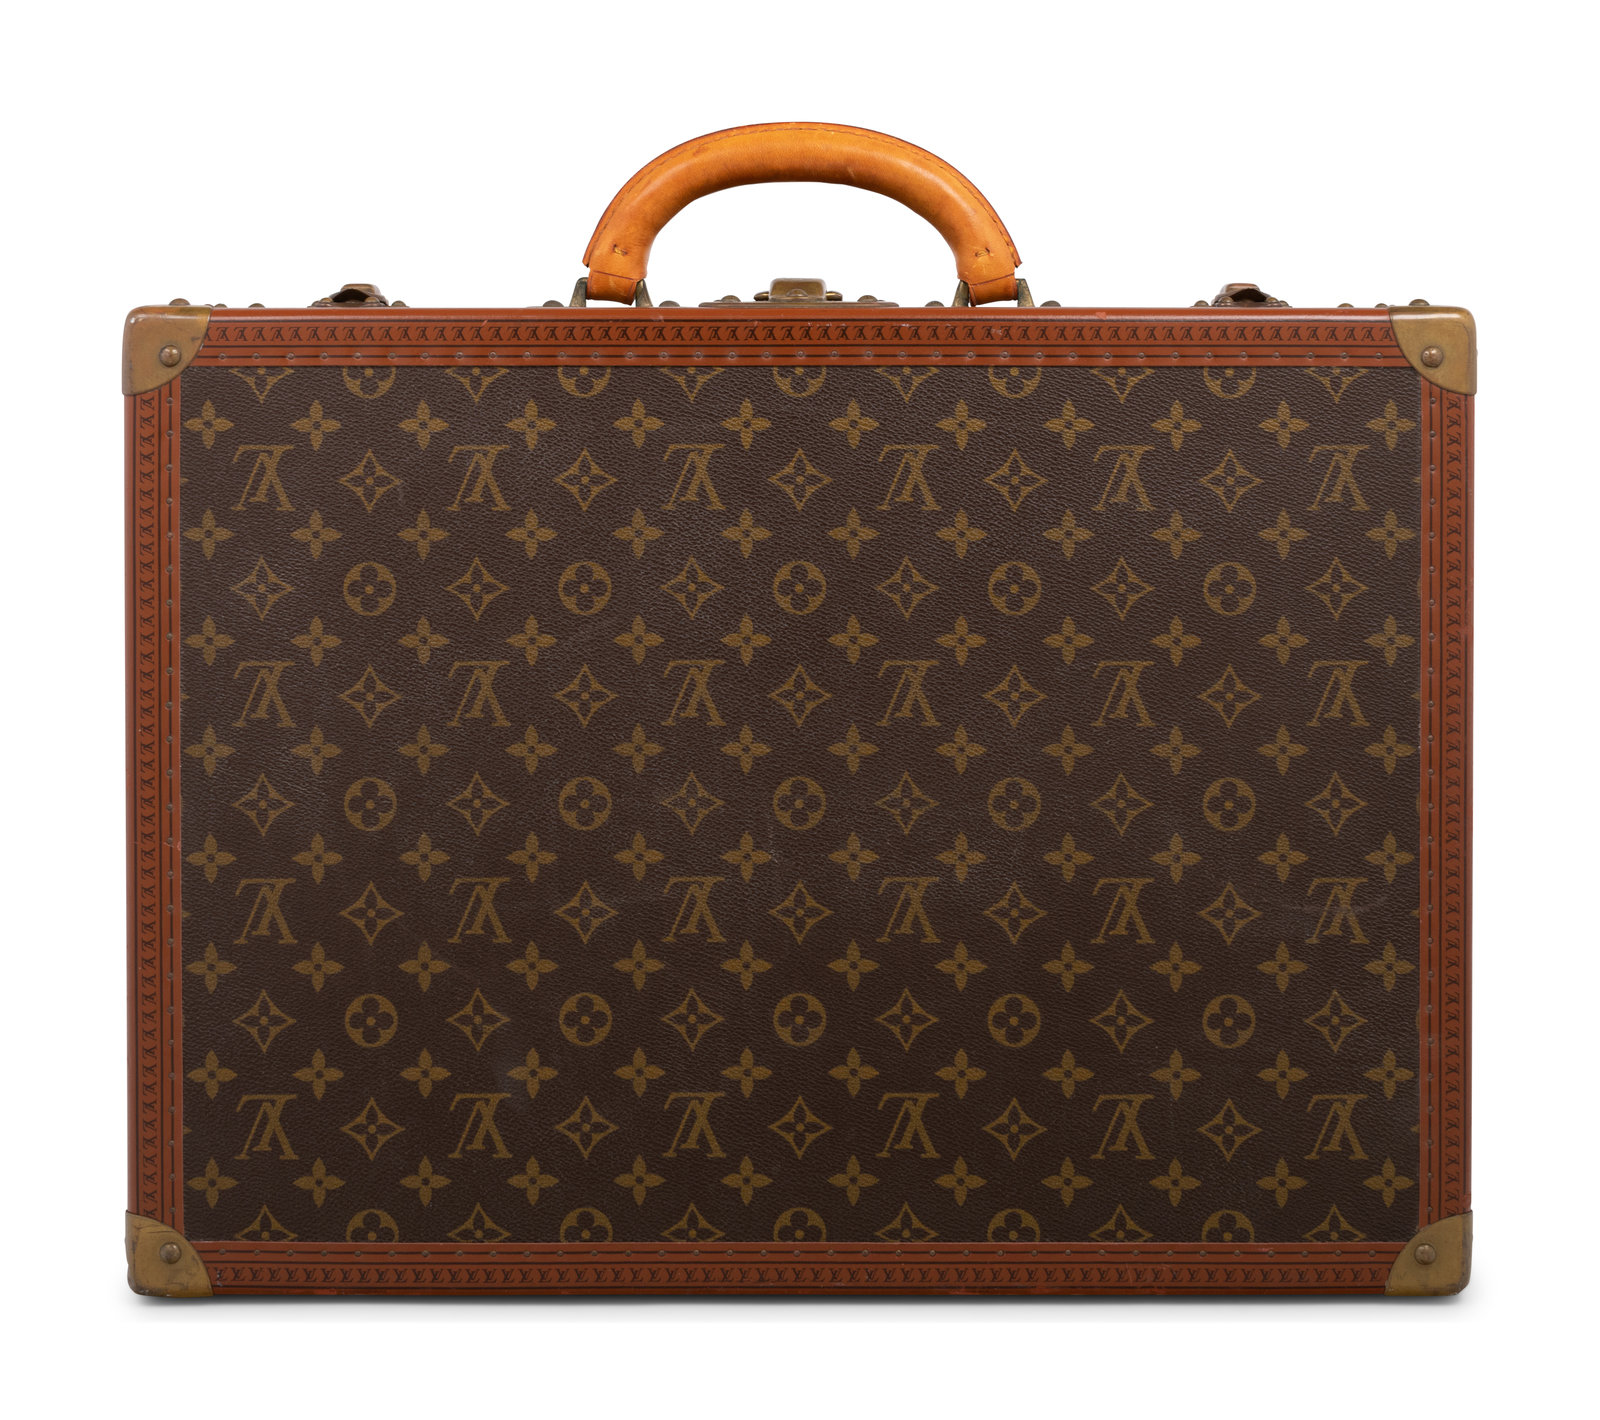 Louis Vuitton Alzer old suitcase leather monogram canvas vintage